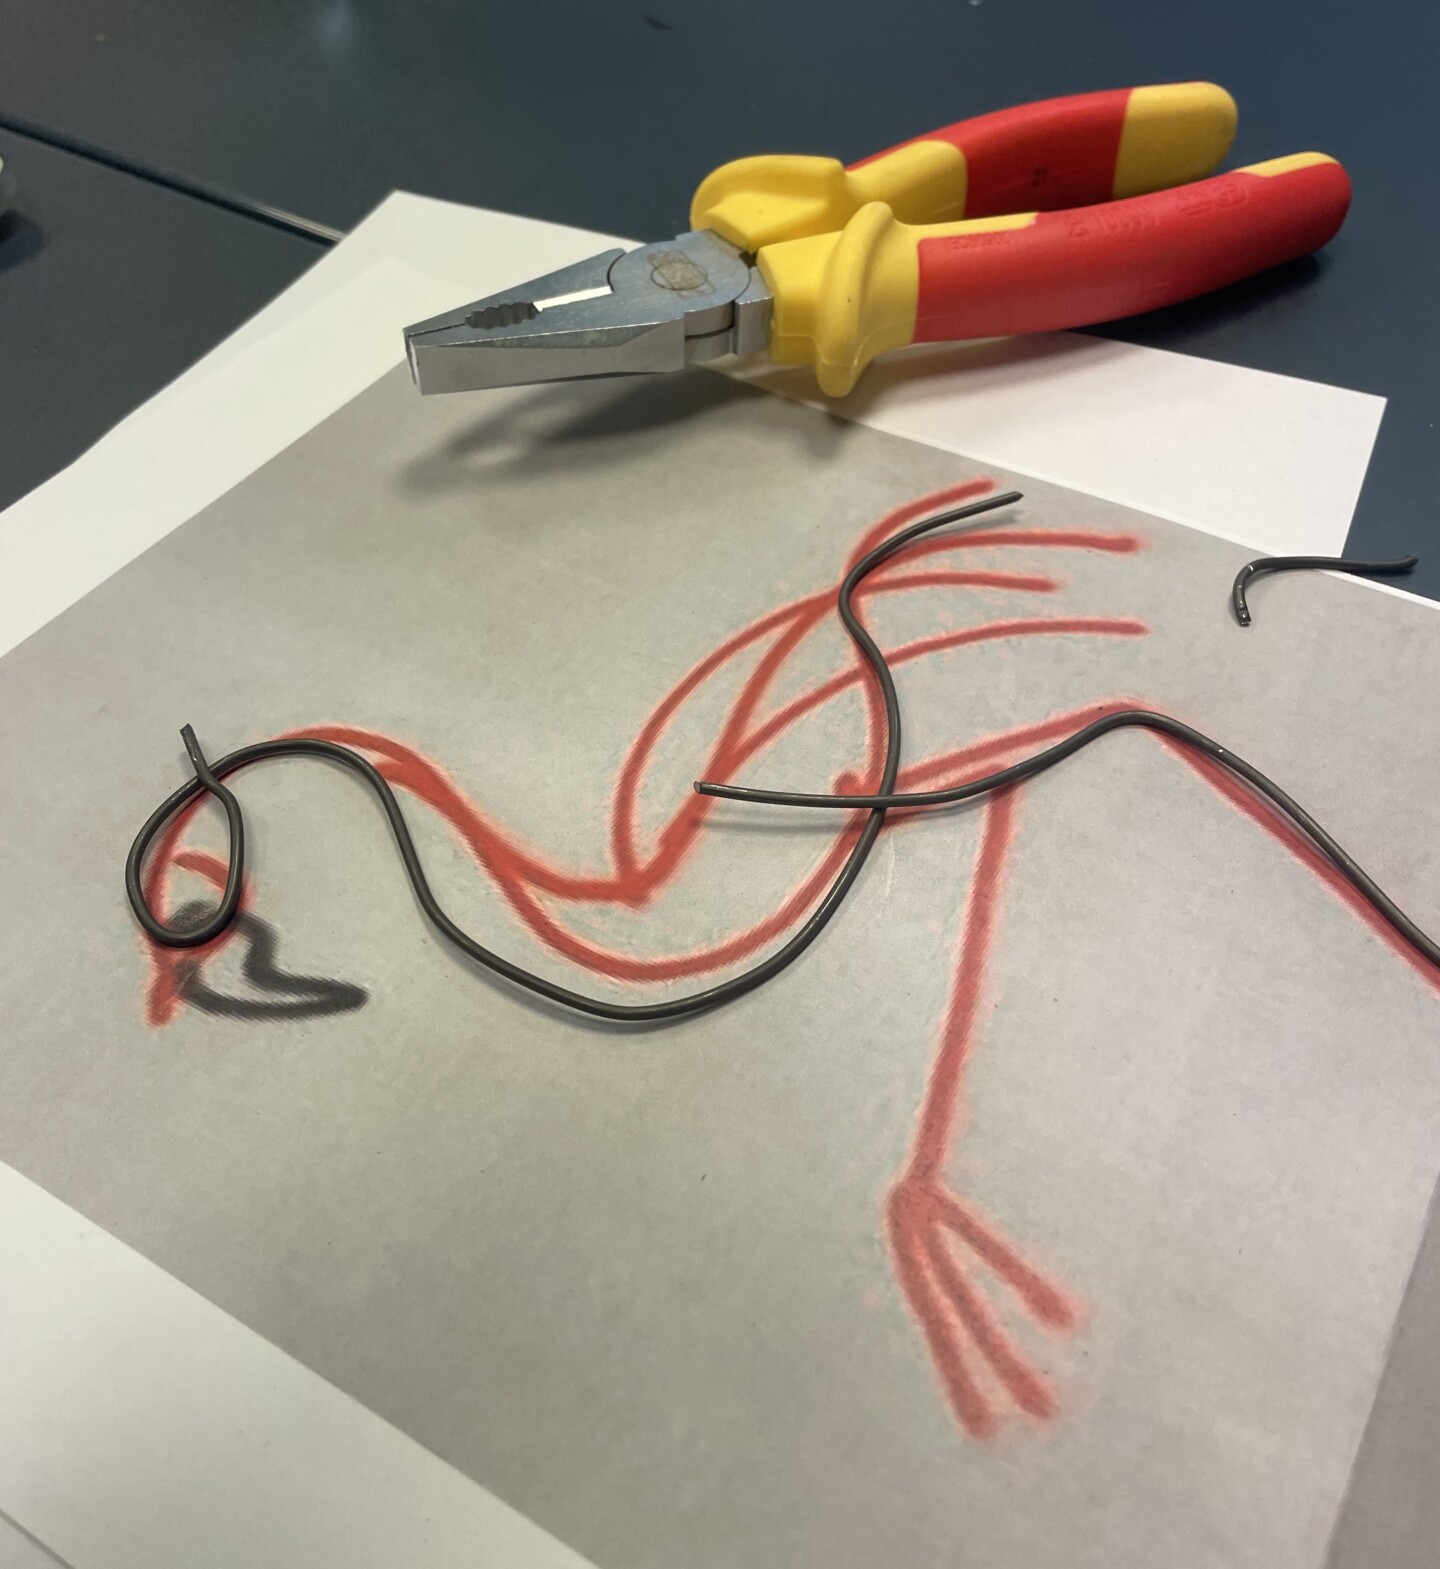 Eine Zange und Draht, der zur Form eines Vogel gebogen wurde, auf einem Blatt Papier, auf dm die Vogelform vorgezeichnet wurde.